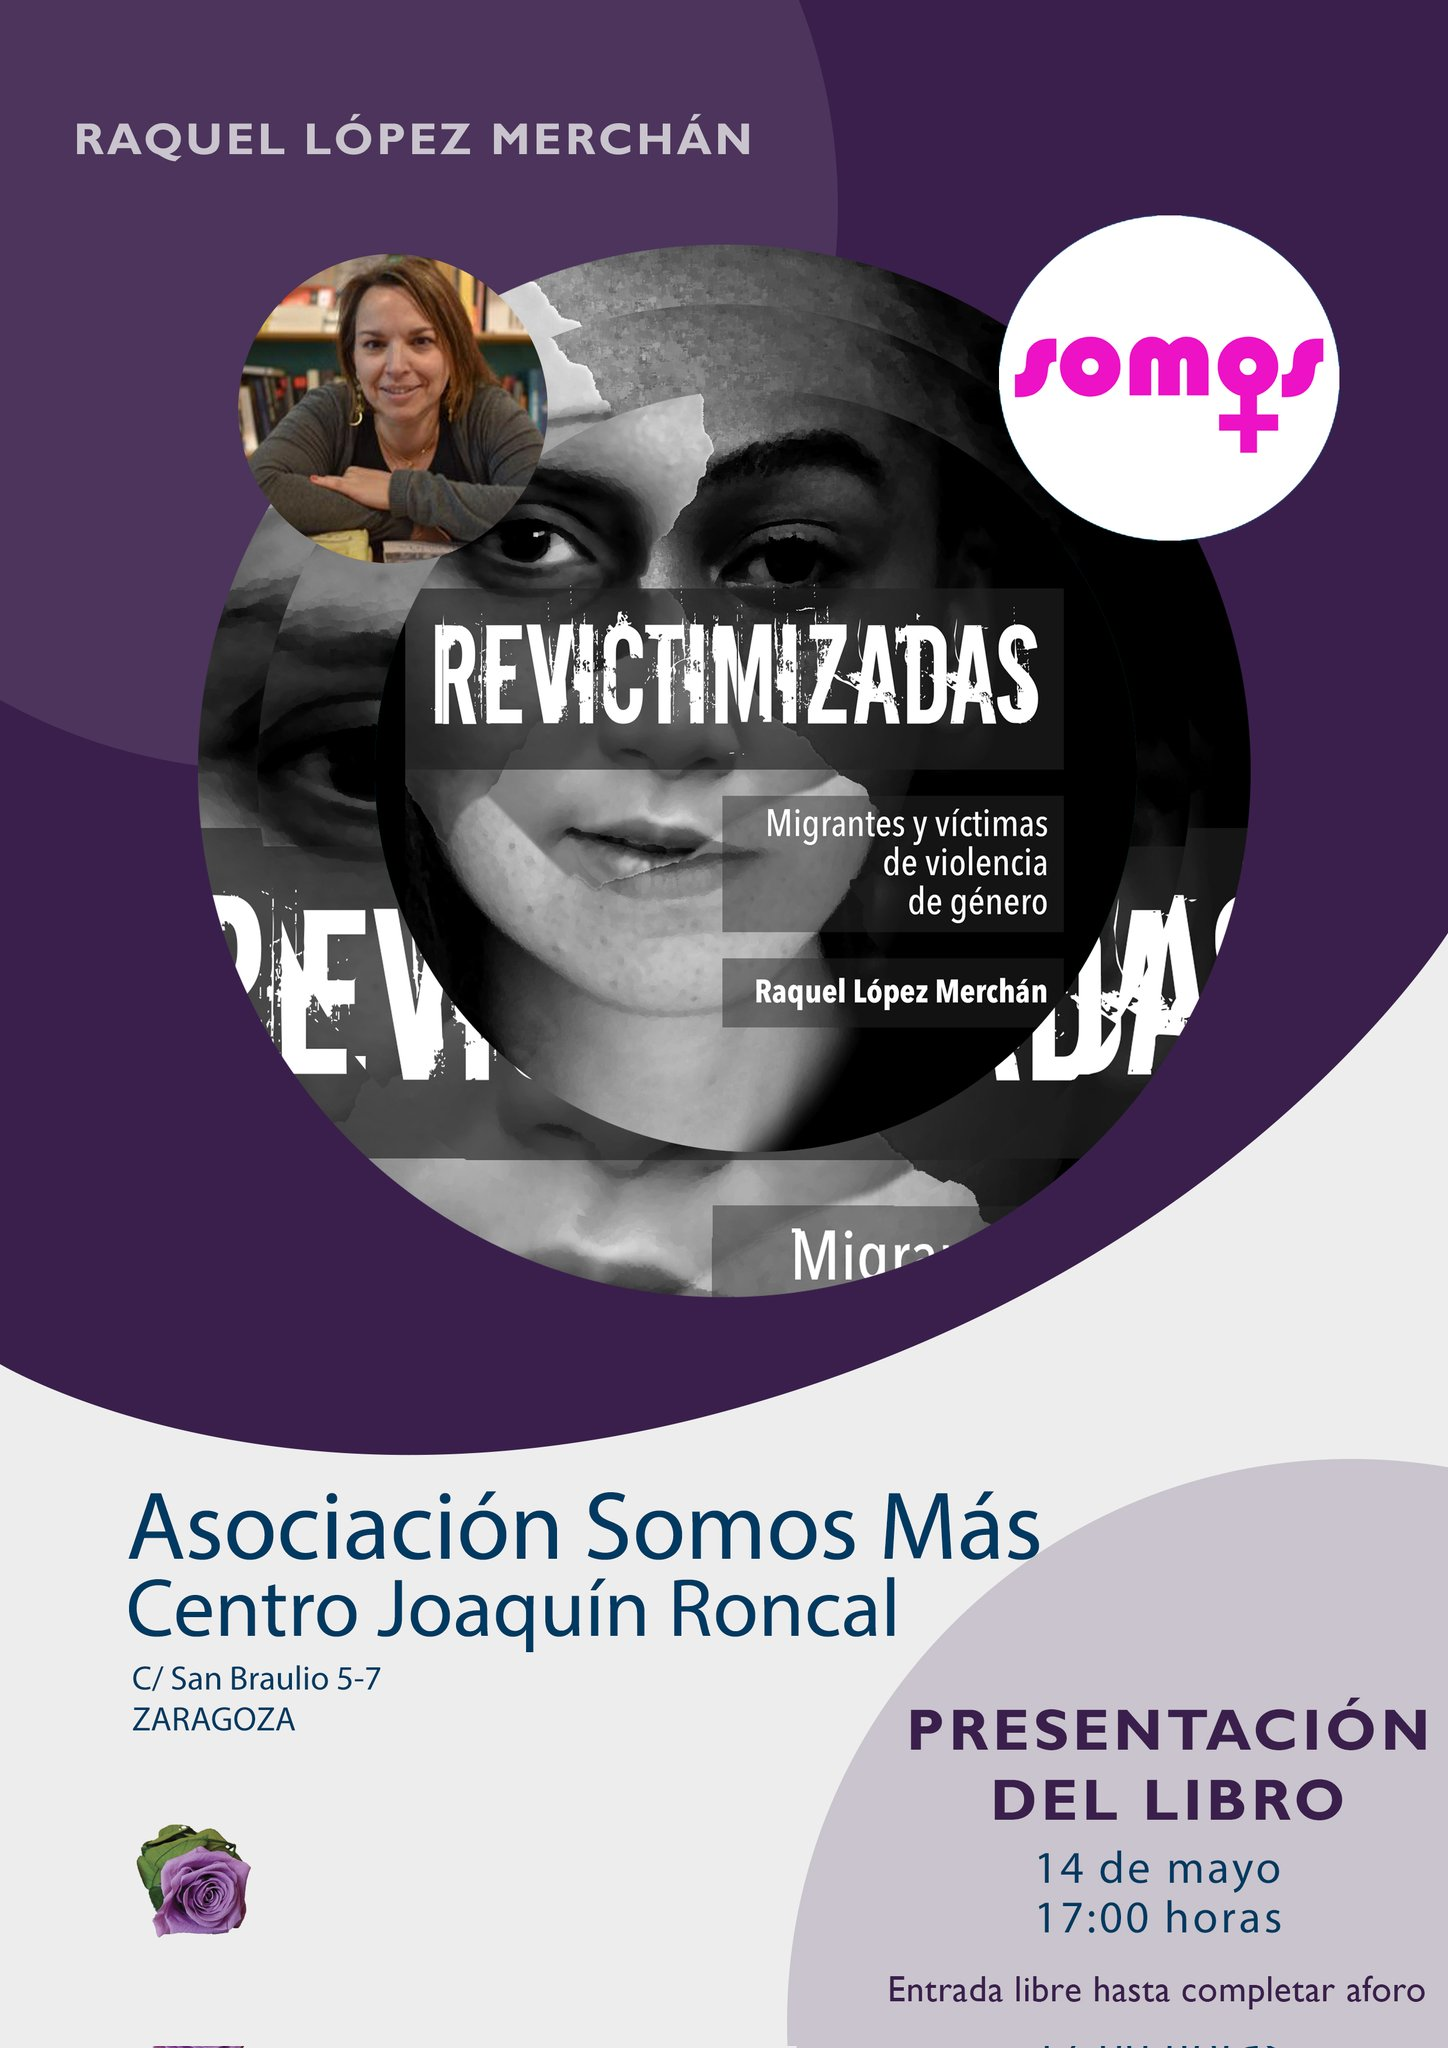 Presentación del Libro "REVICTIMIZADAS" de Raquel López Merchán en Zaragoza